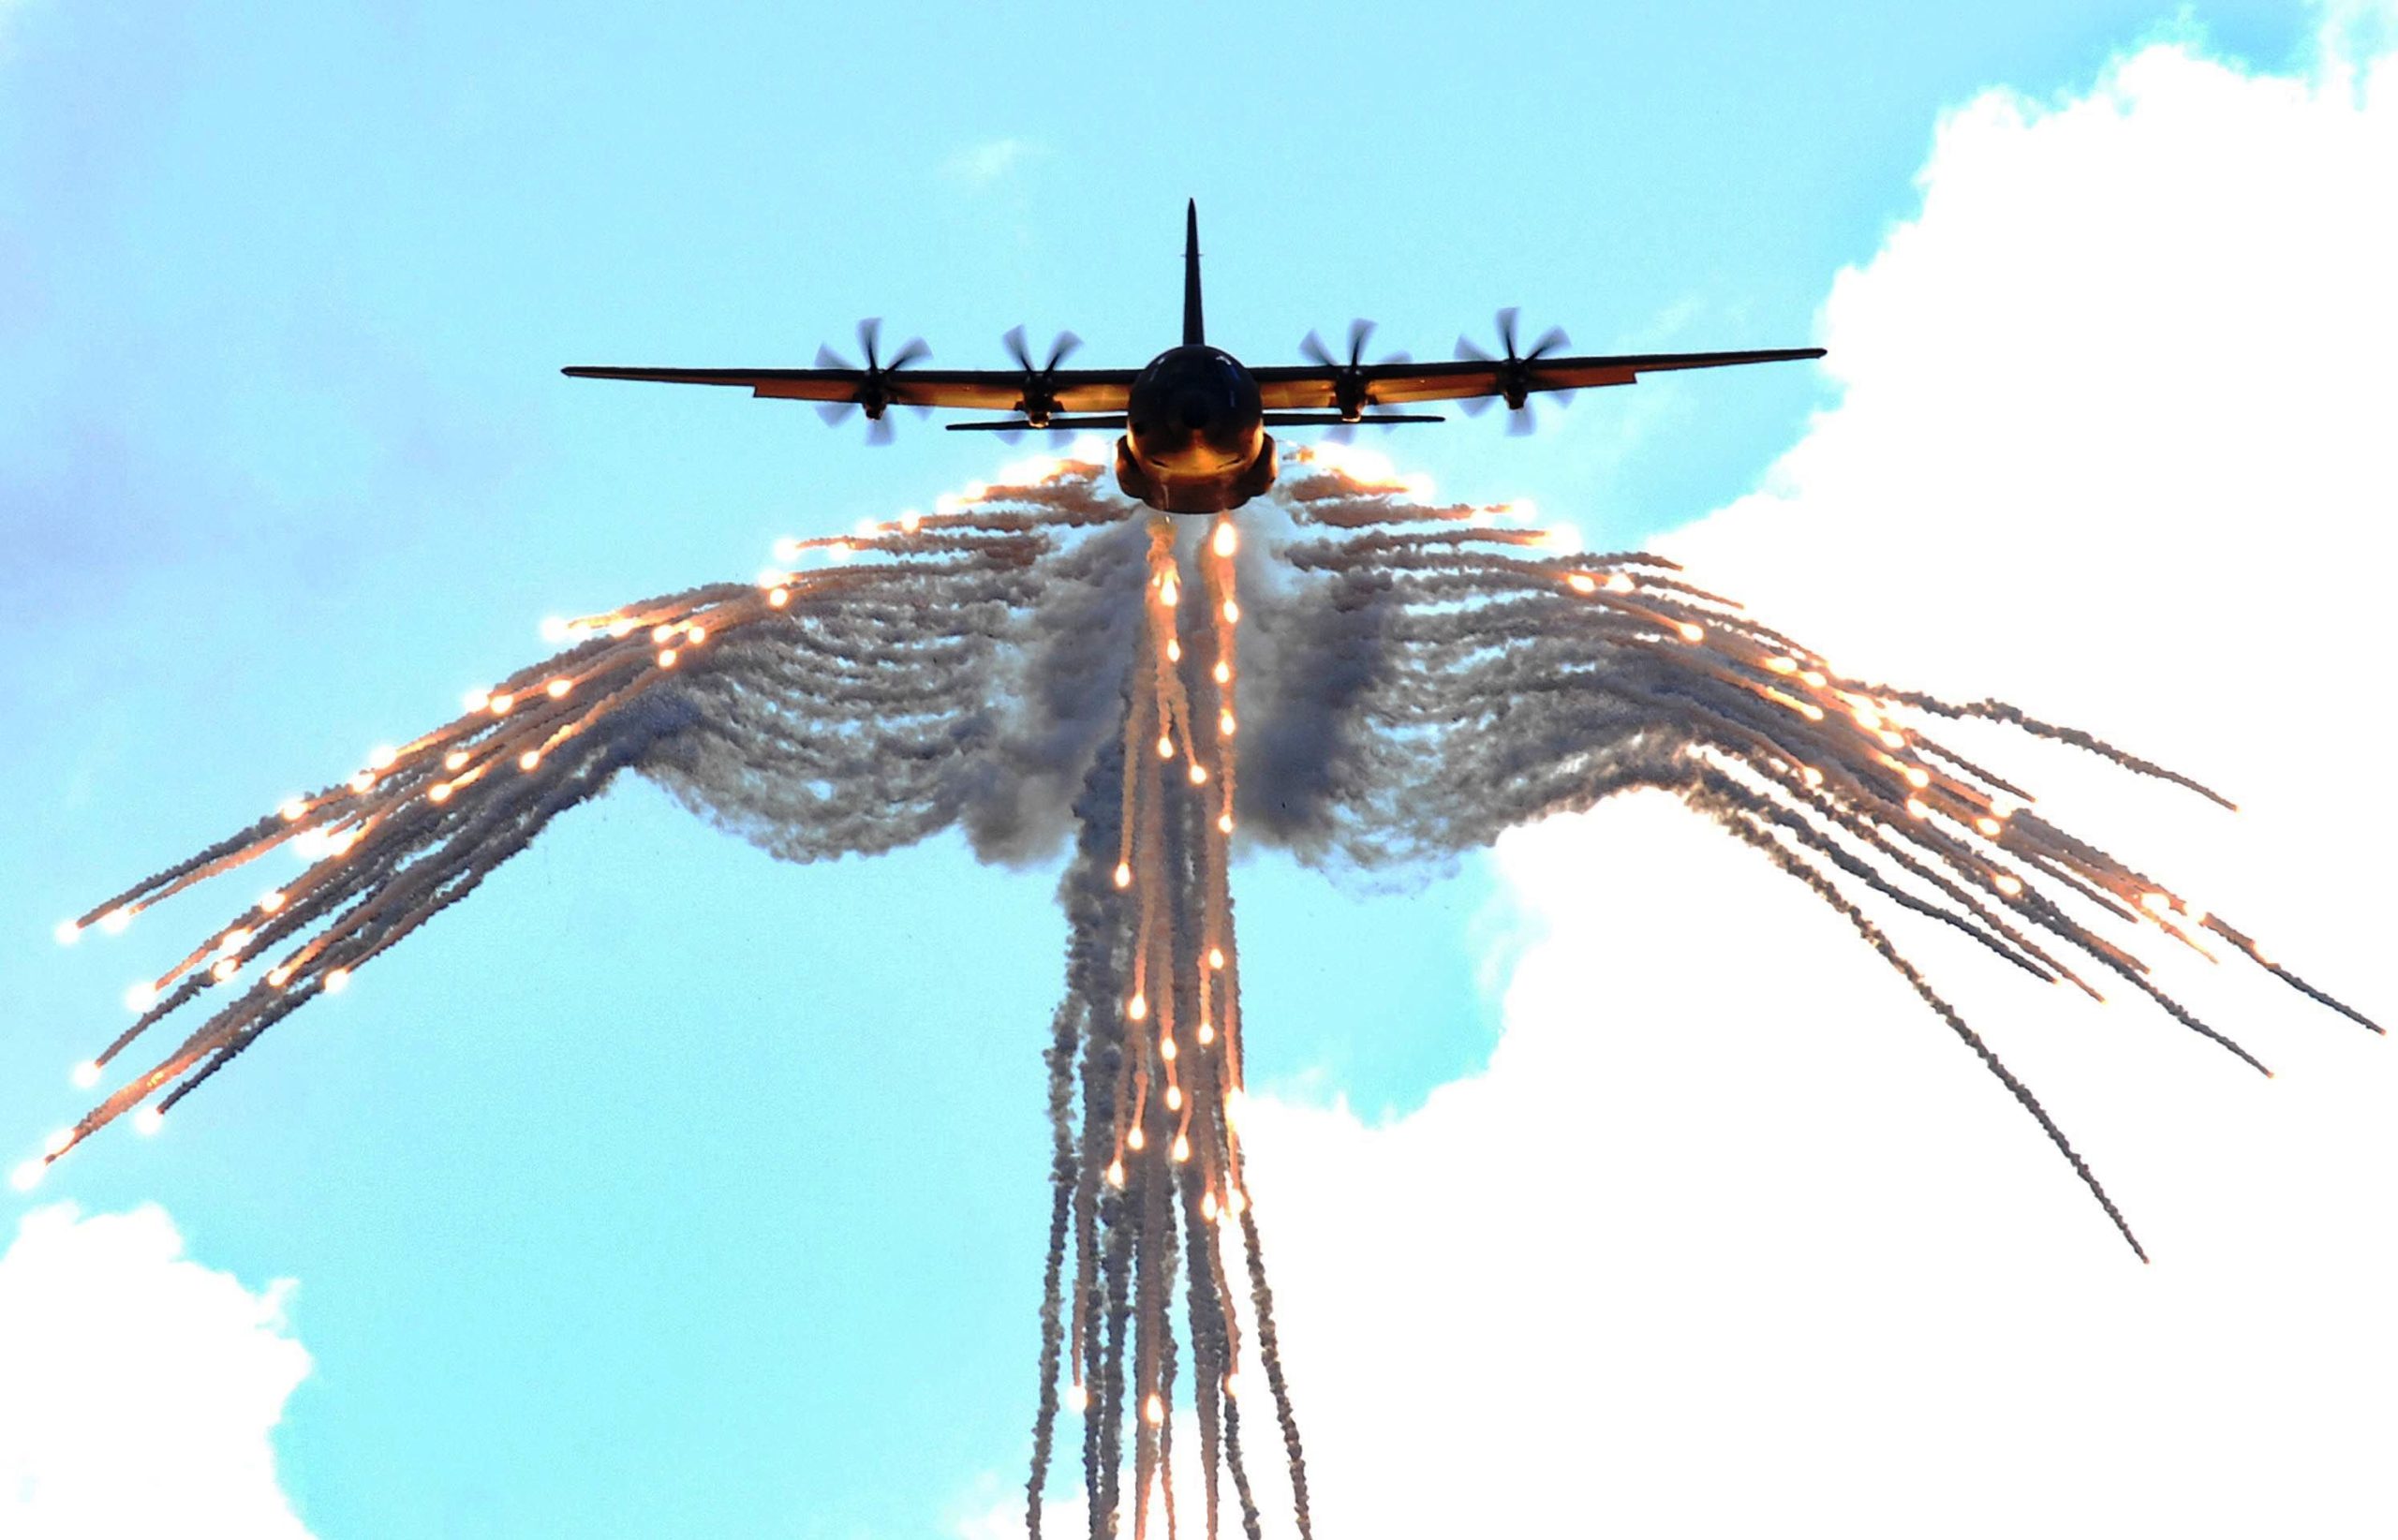 Σοβαρή  τουρκική πρόκληση:  CN-235MPA πάνω από τον Αη Στράτη  εκτόξευσε flares κατά μαχητικών της ΠΑ! (upd)